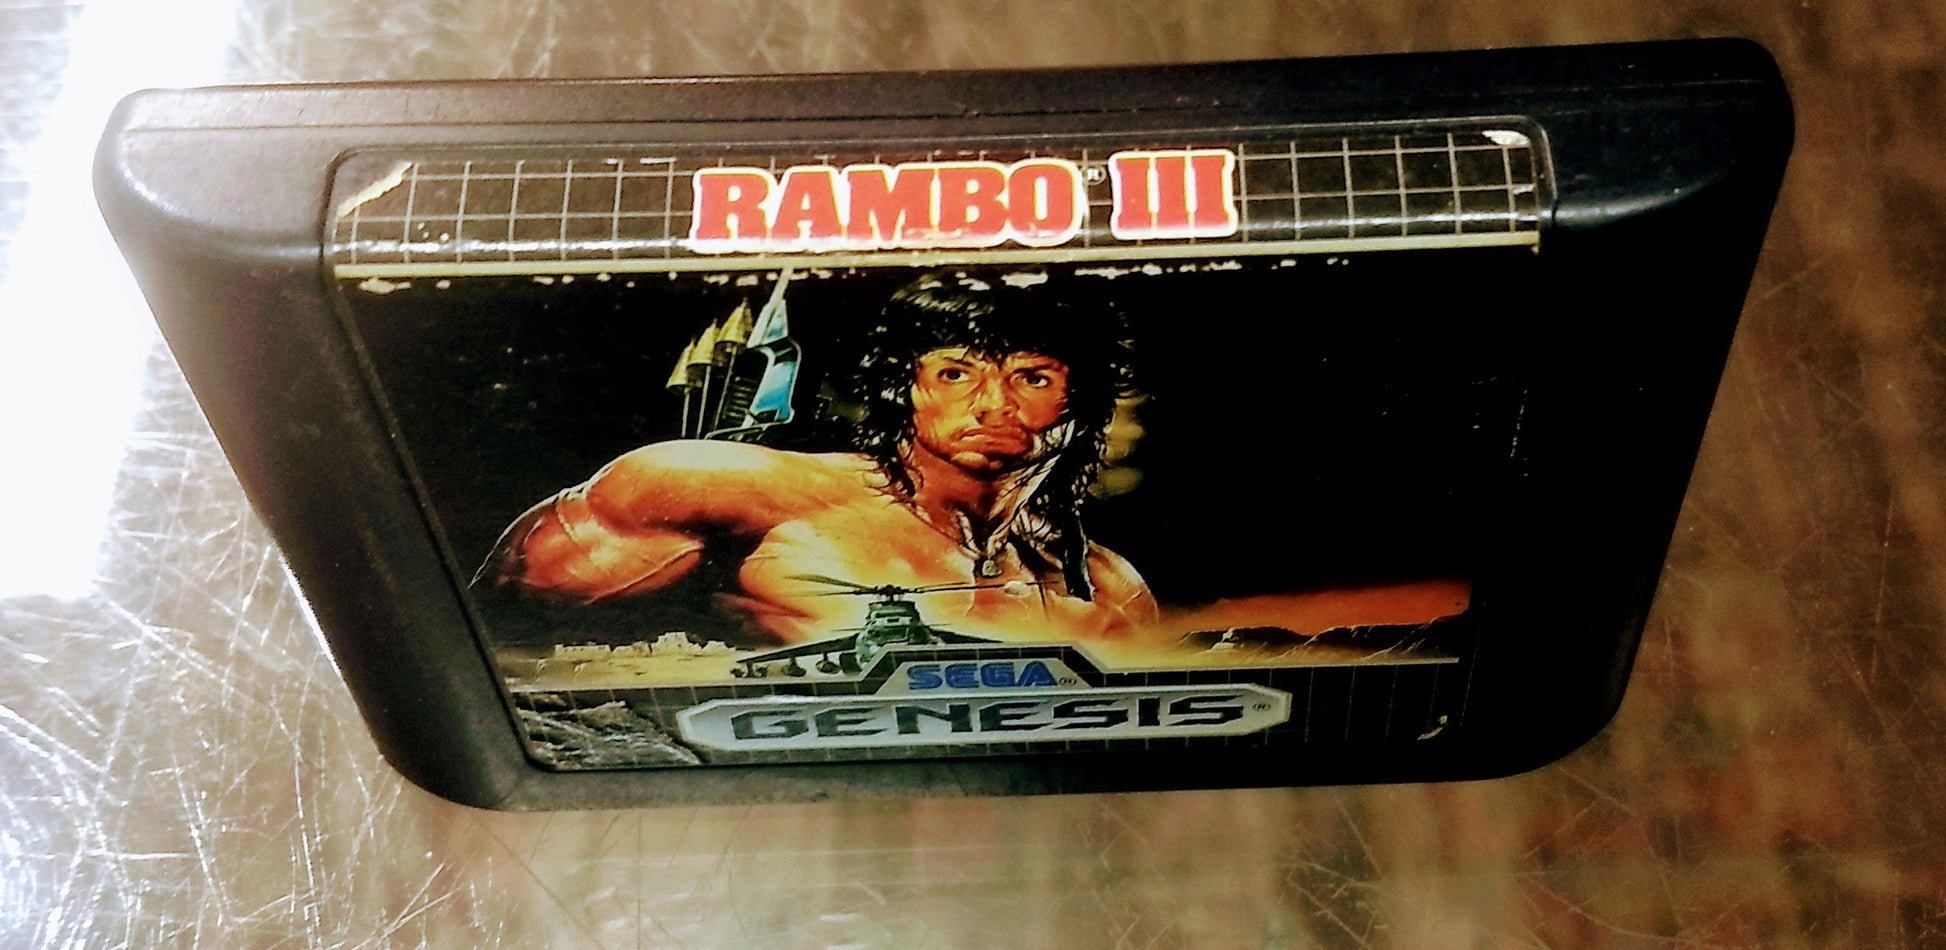 RAMBO III 3 (SEGA GENESIS SG) - jeux video game-x